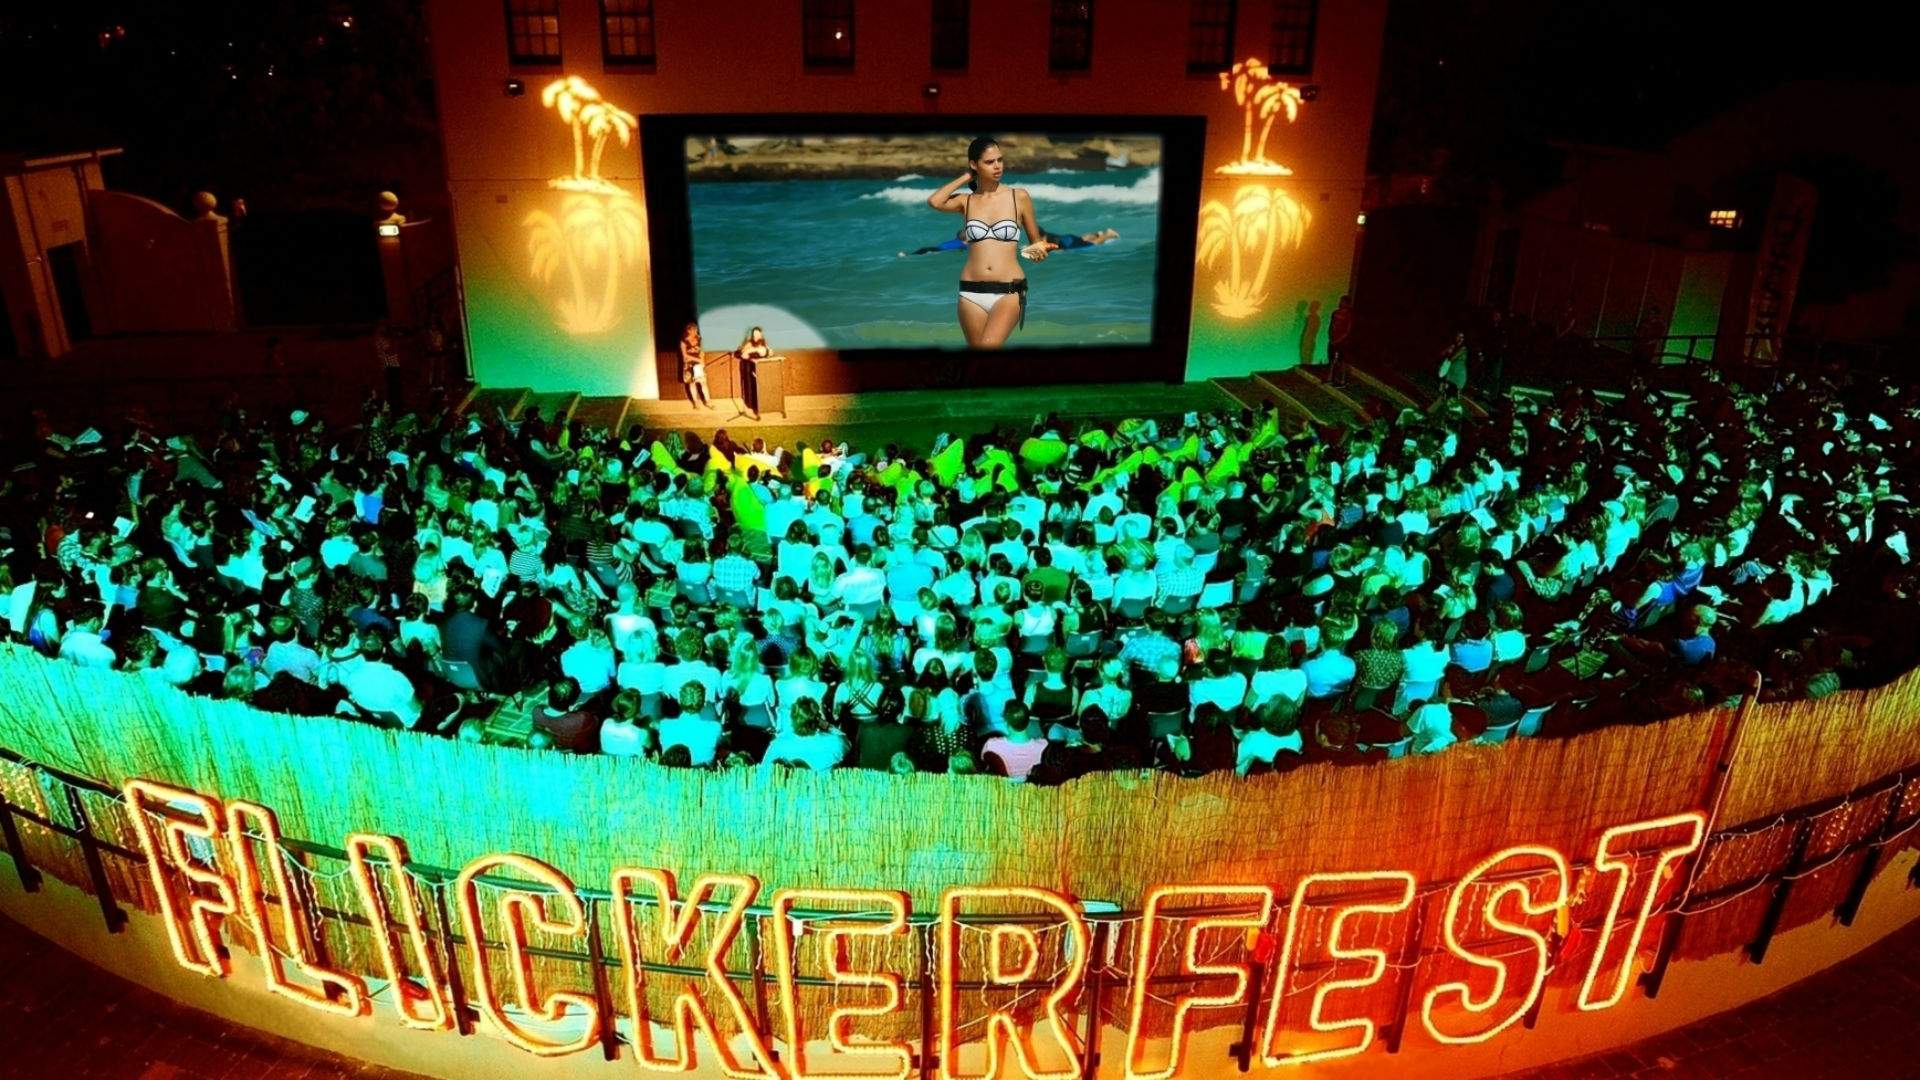 Flickerfest International Short Film Festival Sydney 2021